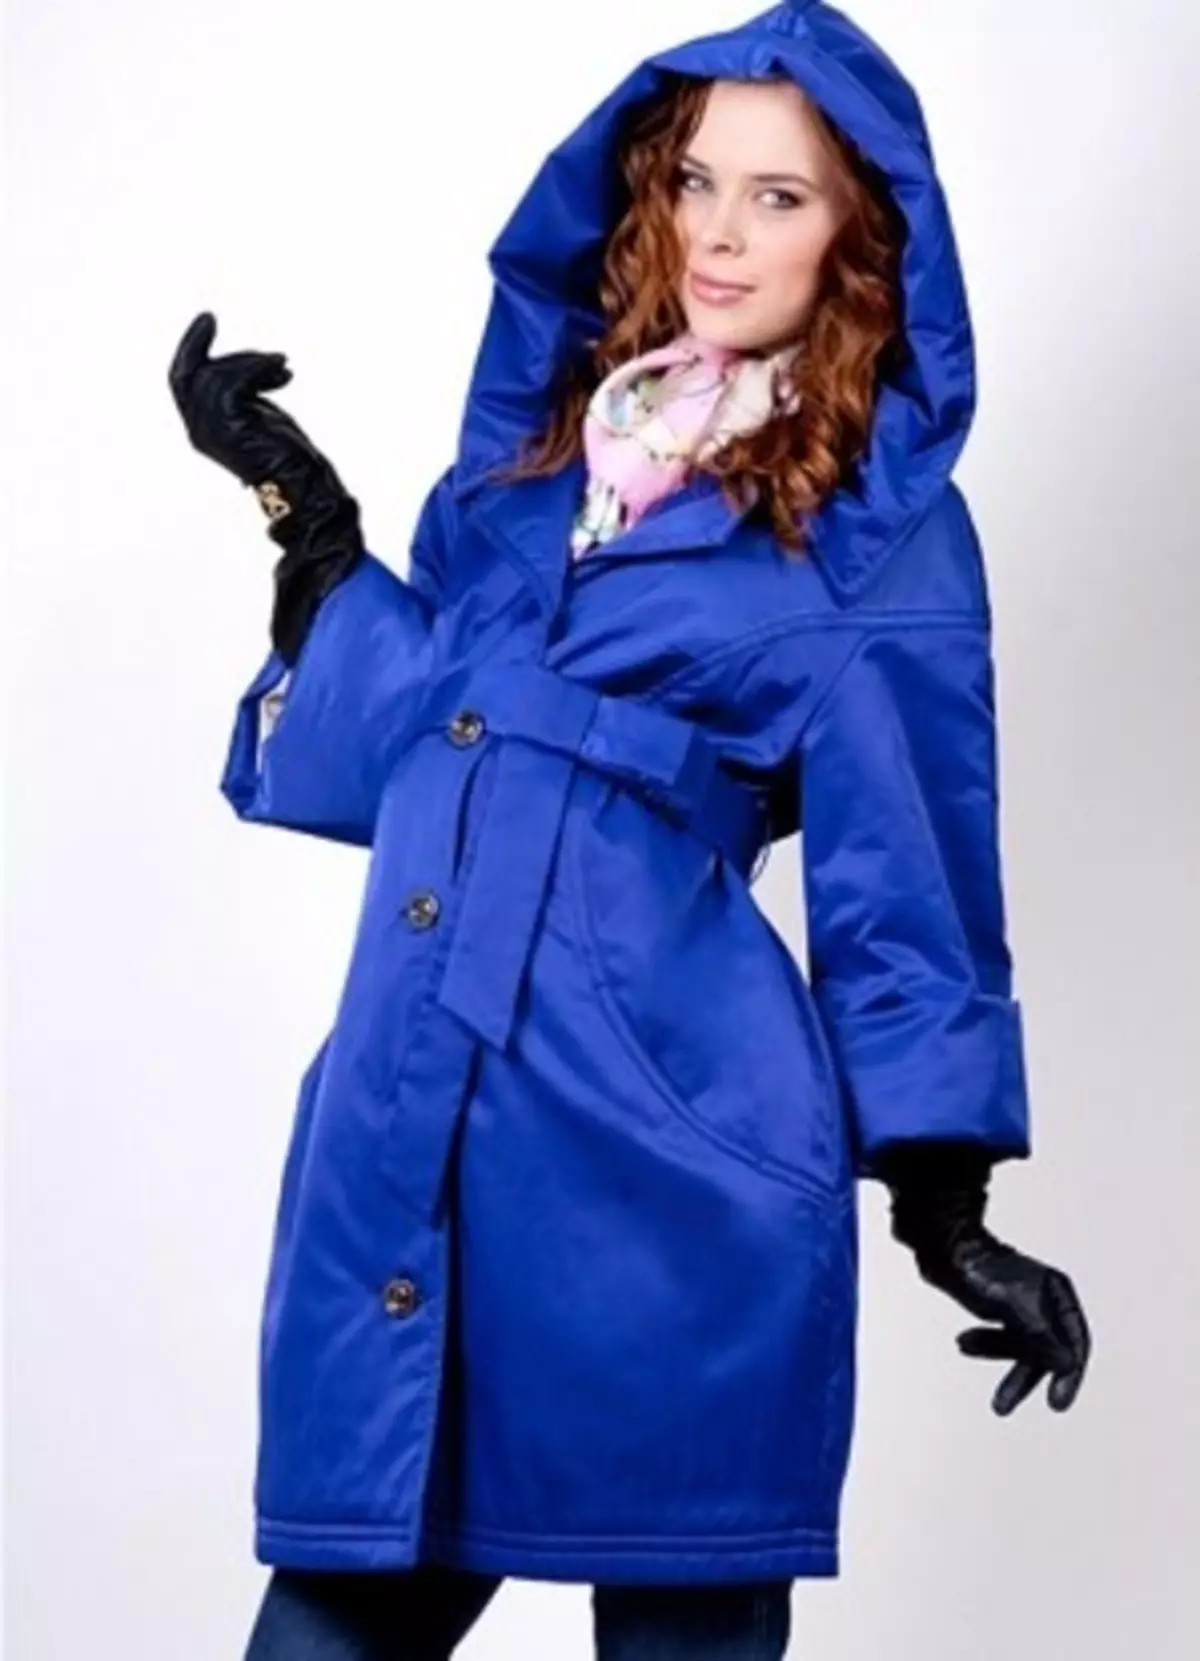 Manto para mulheres grávidas (40 fotos): casaco e casaco e capa de jaqueta por Adel, hm, modificador e doce mamãe 359_12